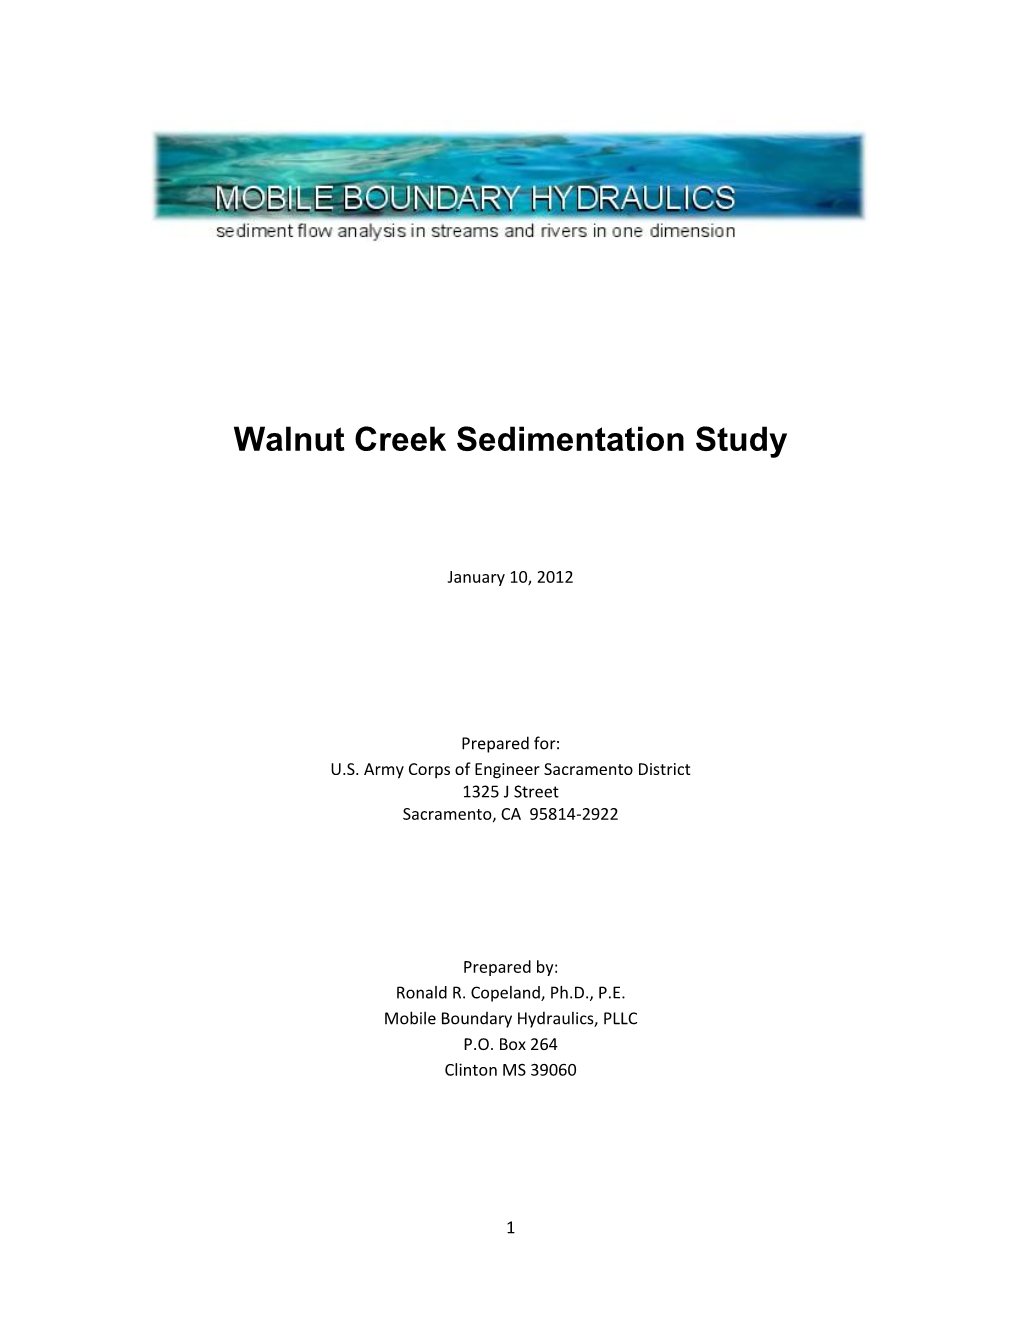 Walnut Creek Sediment Study Final